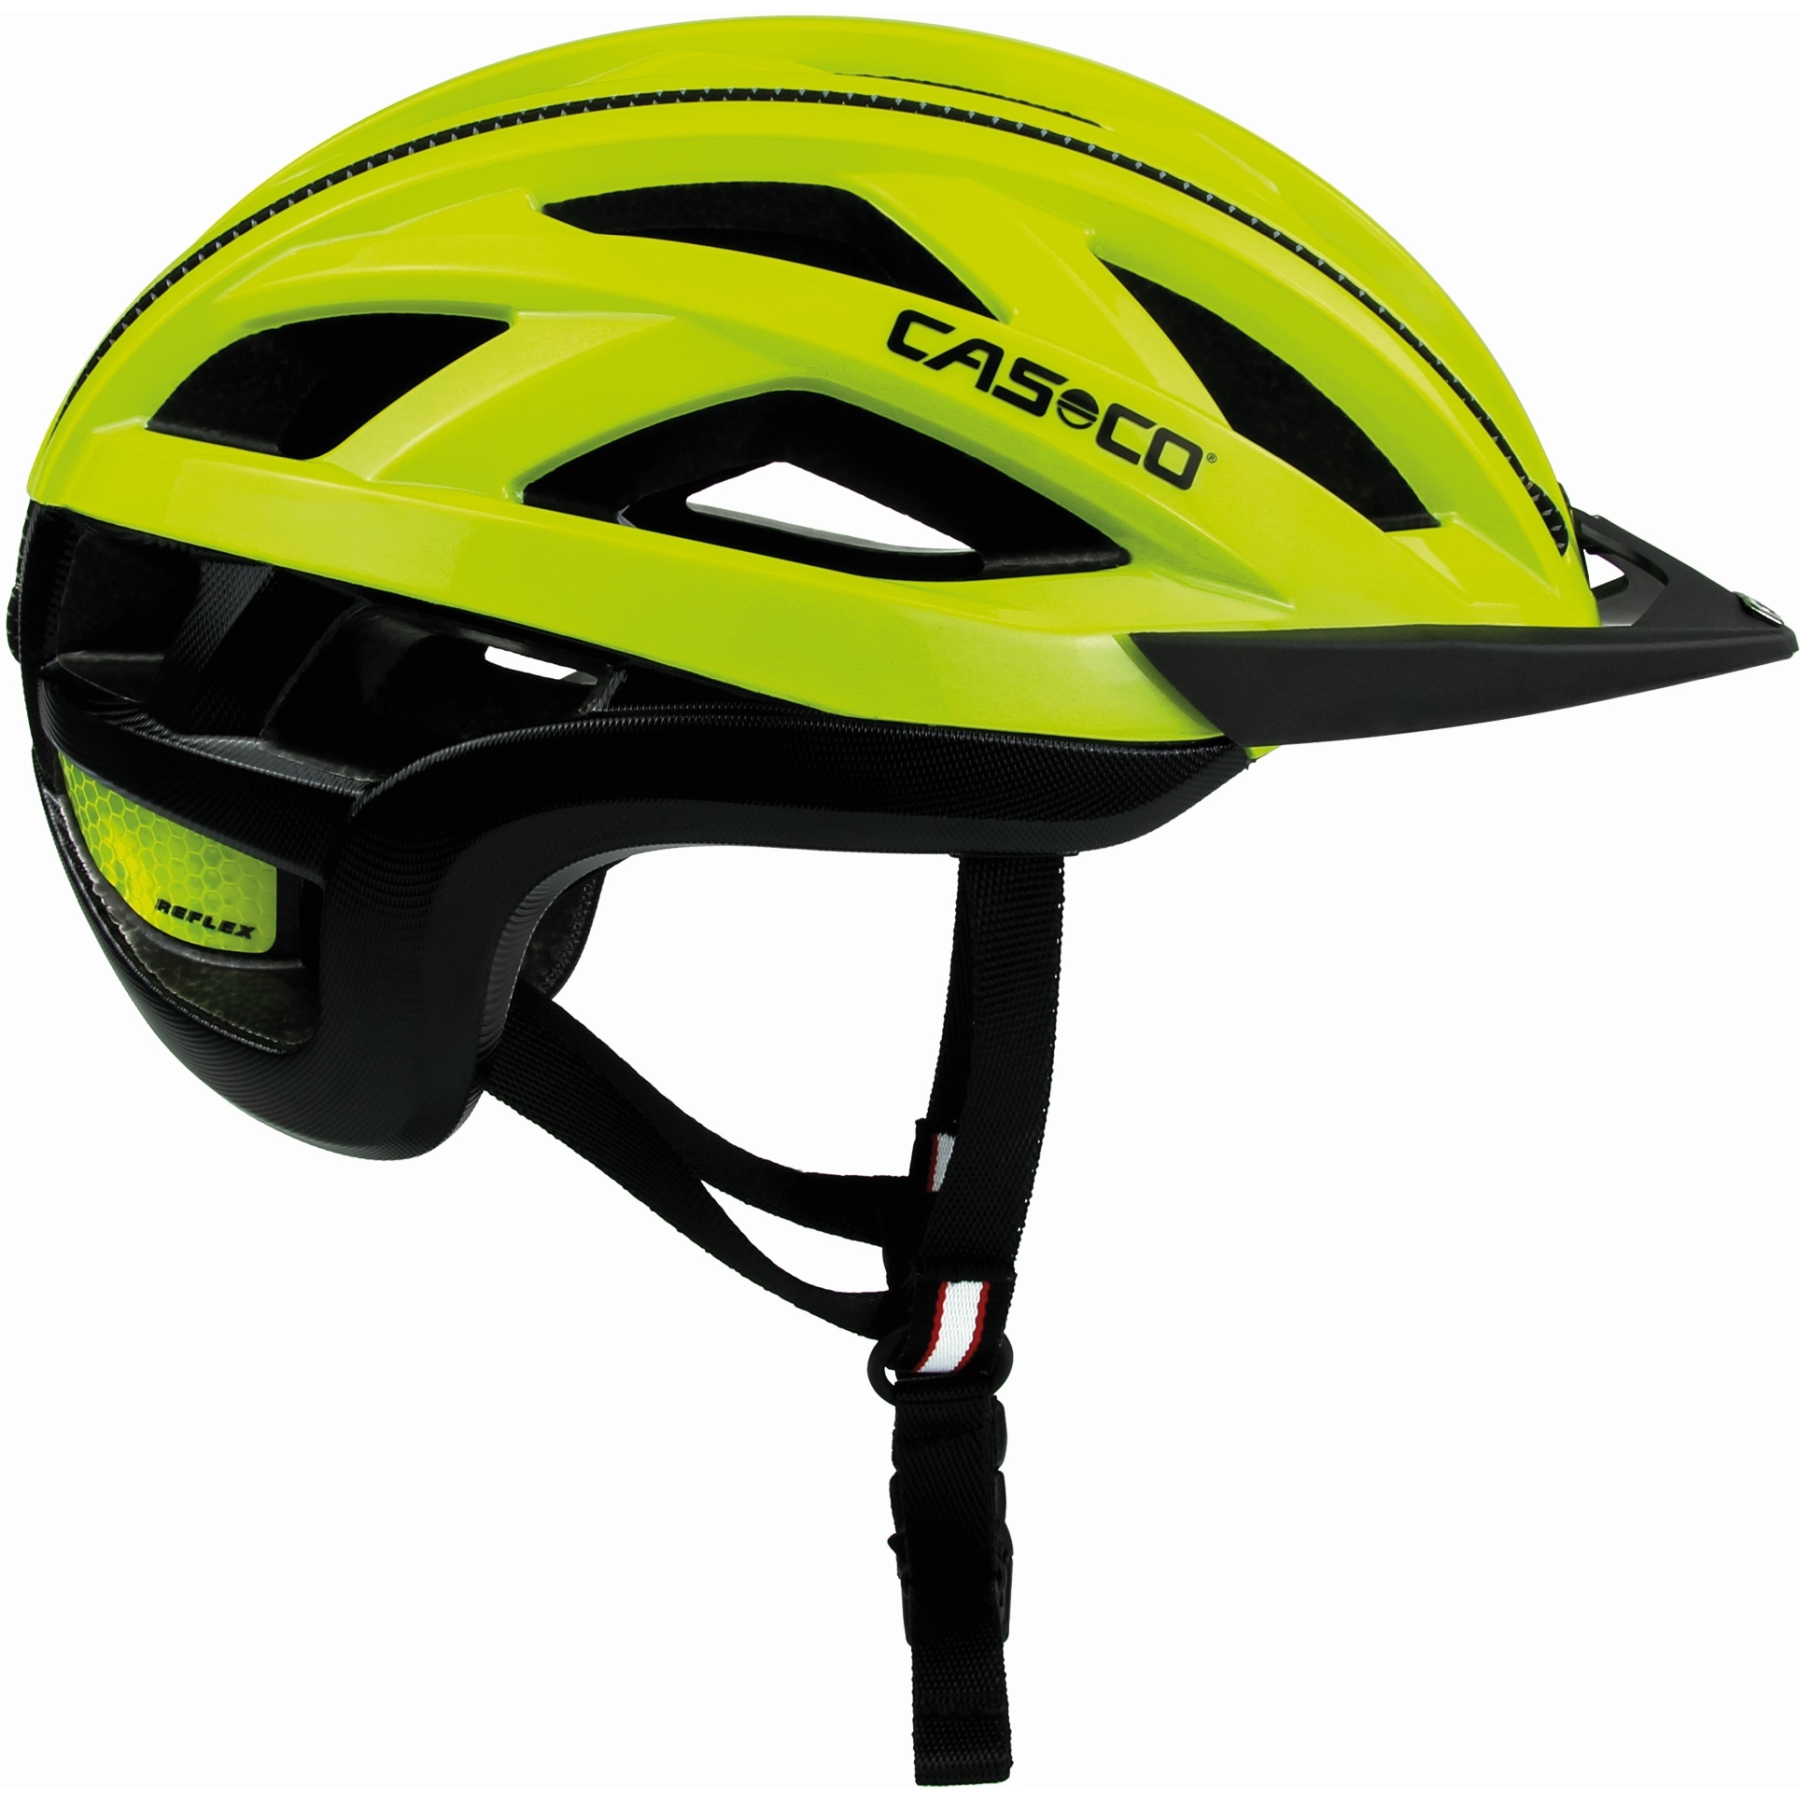 Bild von Casco Cuda 2 Helm - neongelb glanz